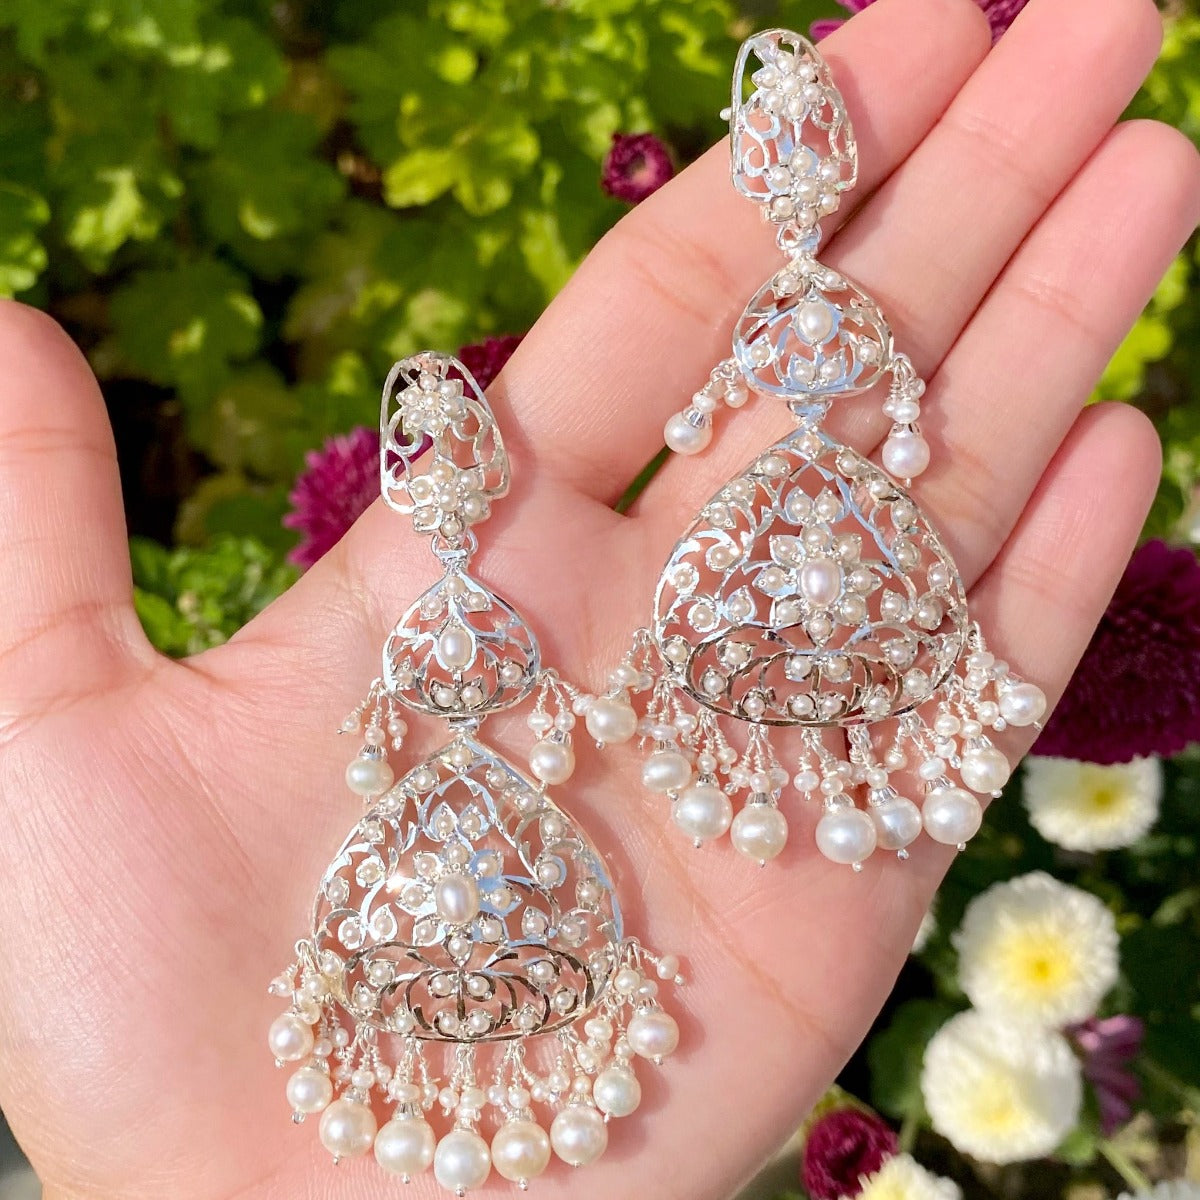 buy sterling silver earrings online in usa